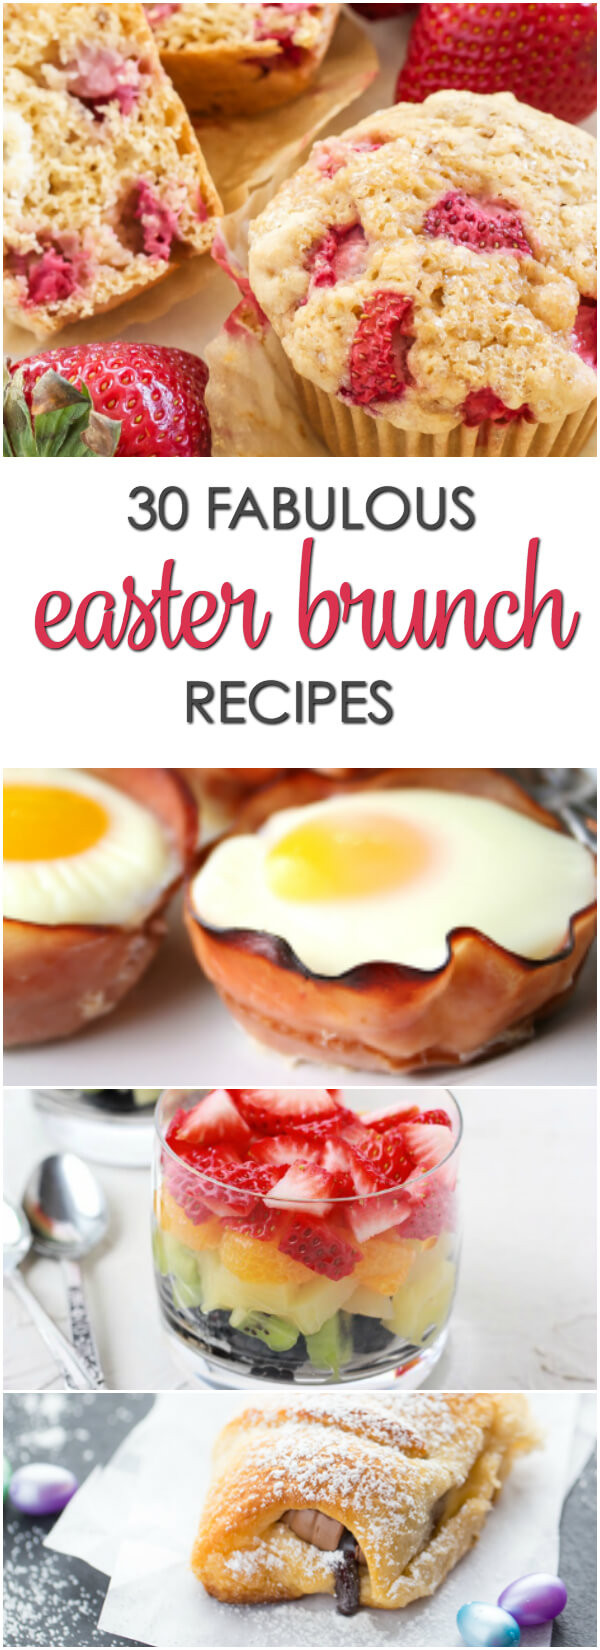 Easter Brunch Desserts
 30 Easter Brunch Recipes